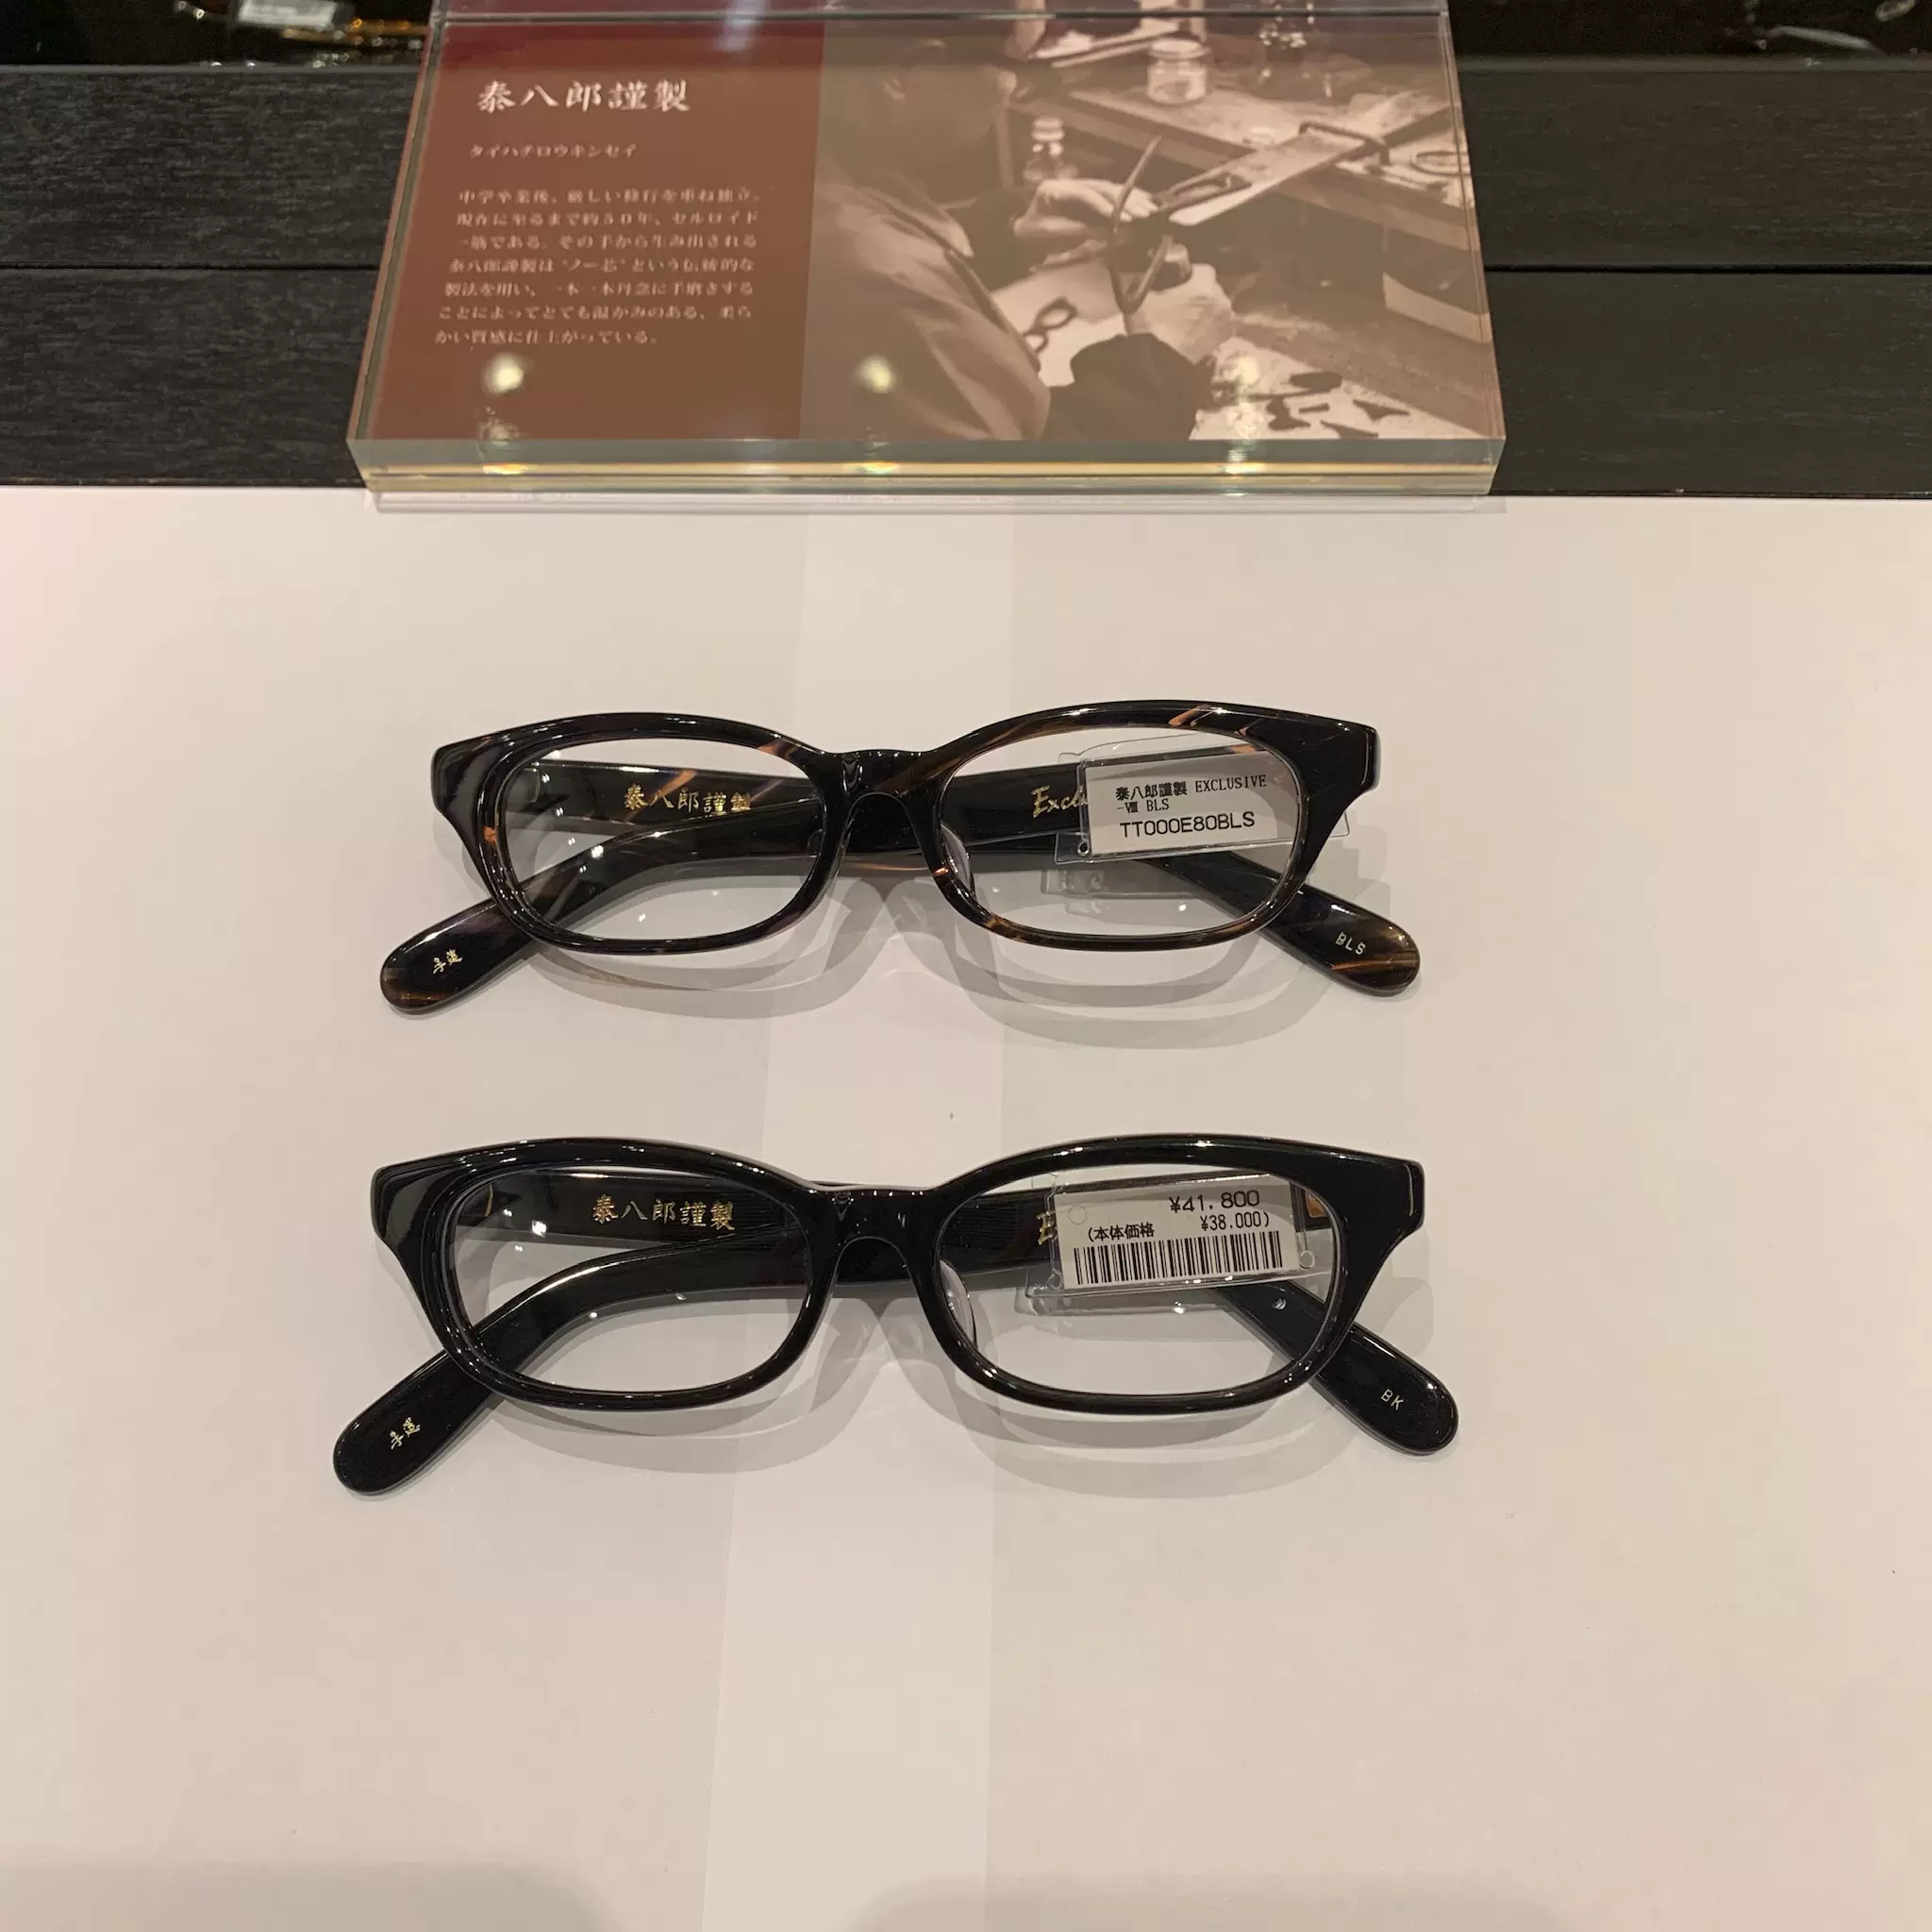 金子眼鏡泰八郎謹制EXCLUSIVE-VIII日本手工賽璐璐板材眼鏡架-Taobao